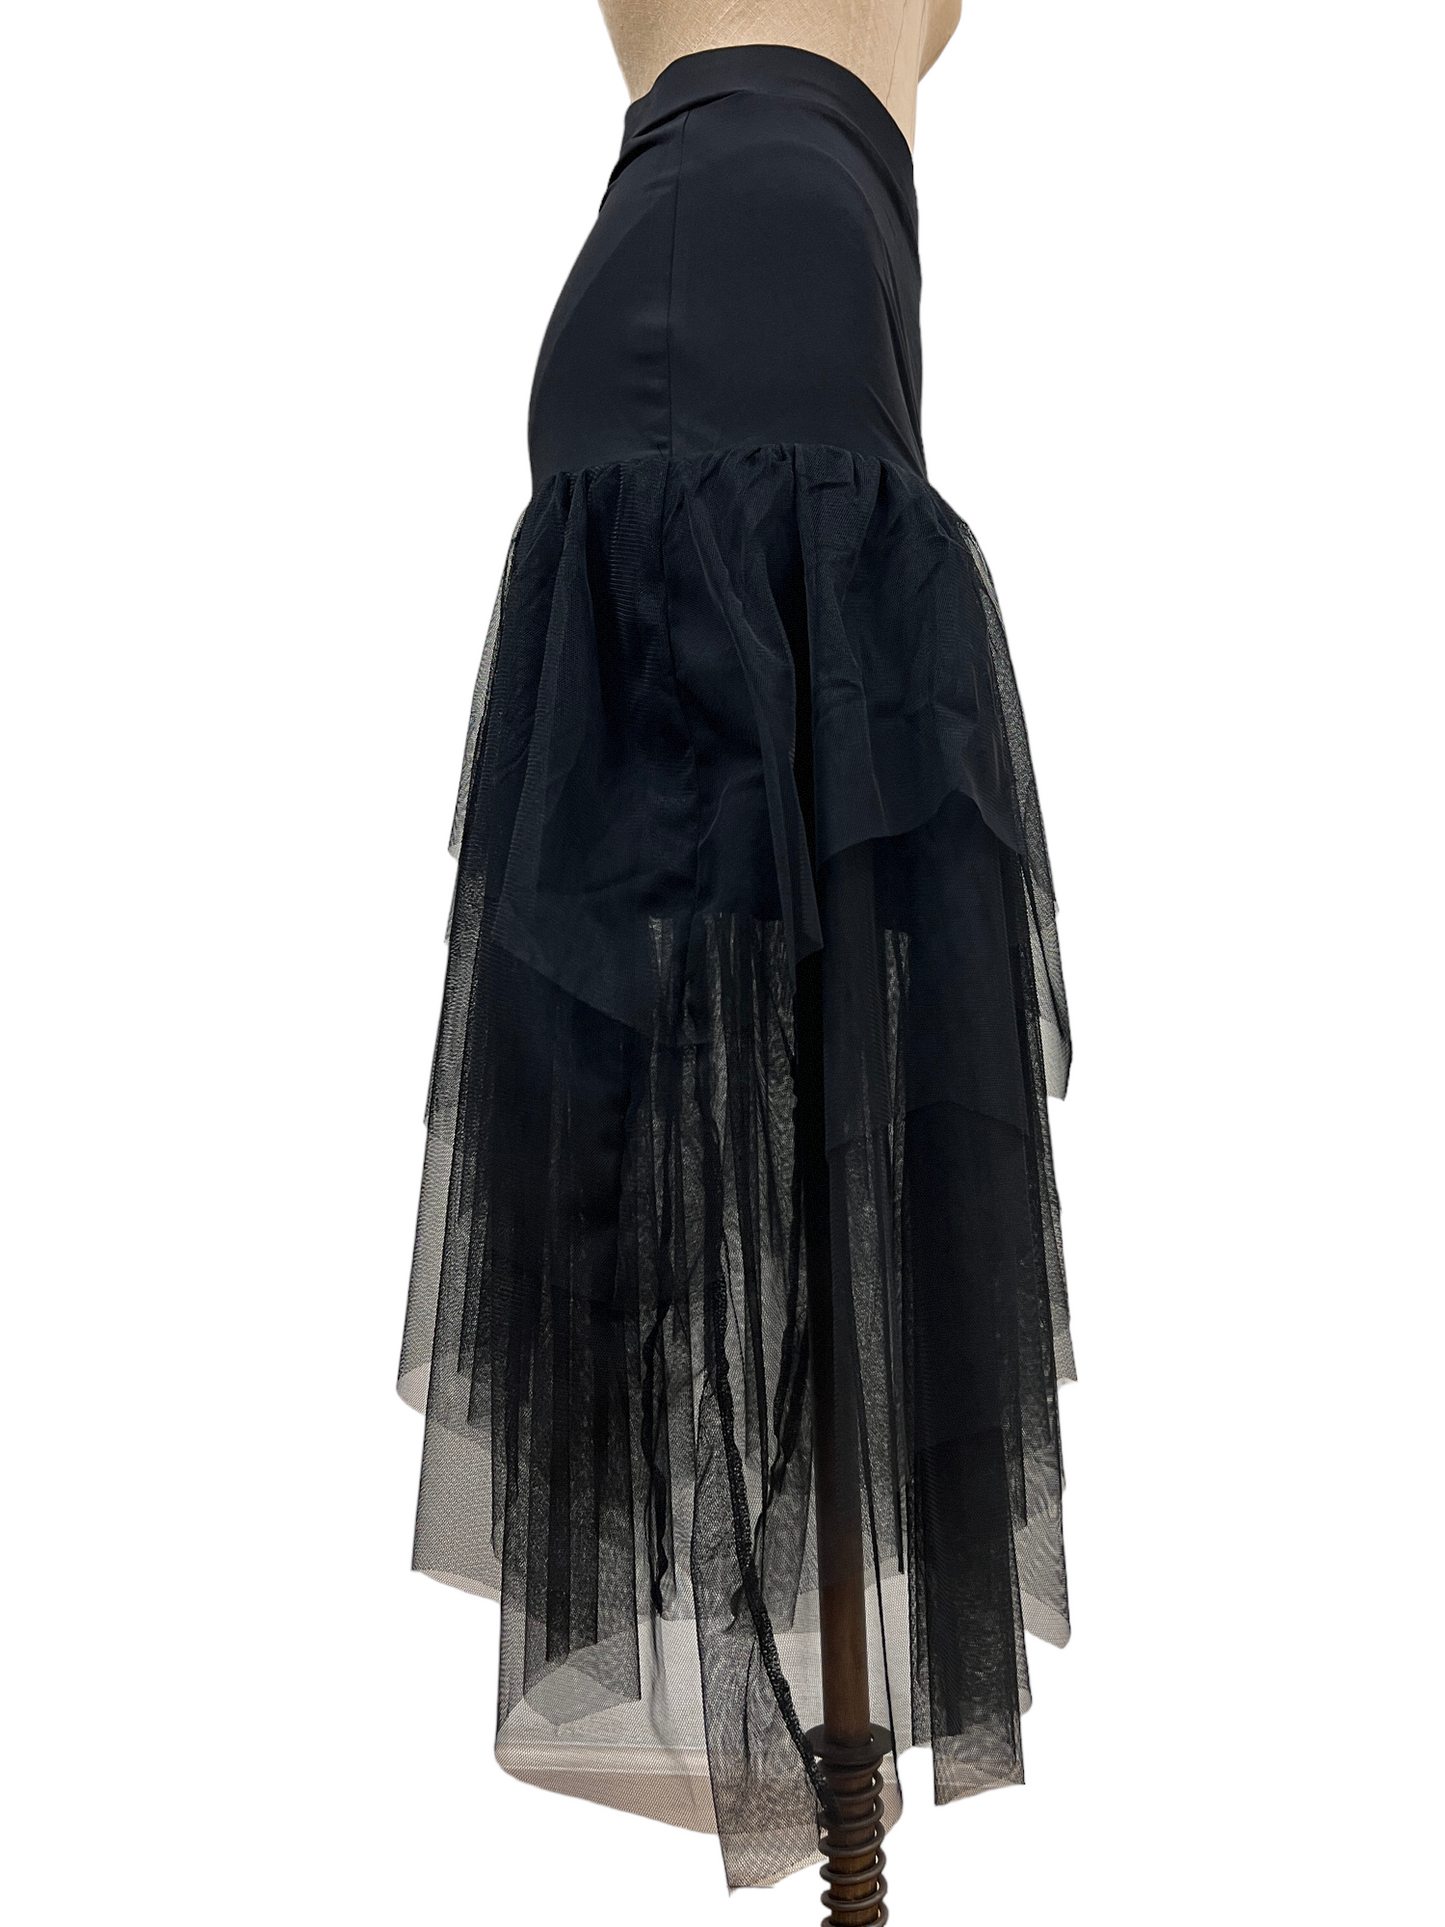 Madi Skirt in Black